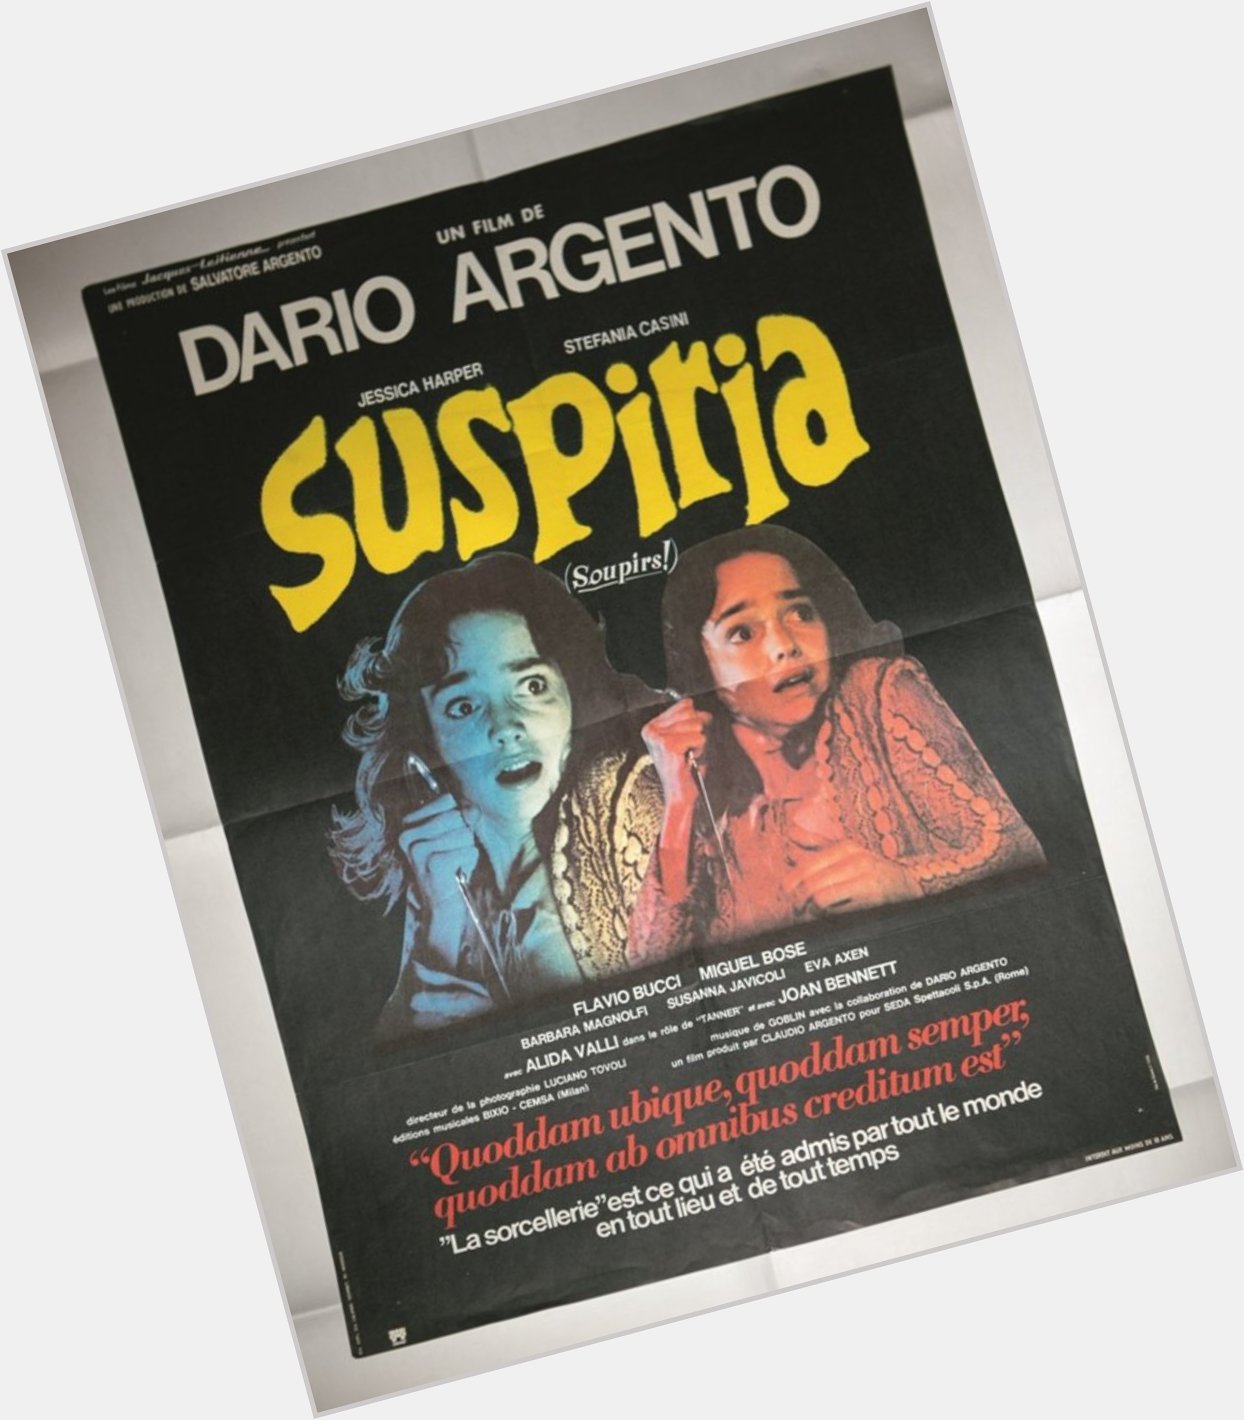 Happy birthday to Italian Master of Horror, Dario Argento! 